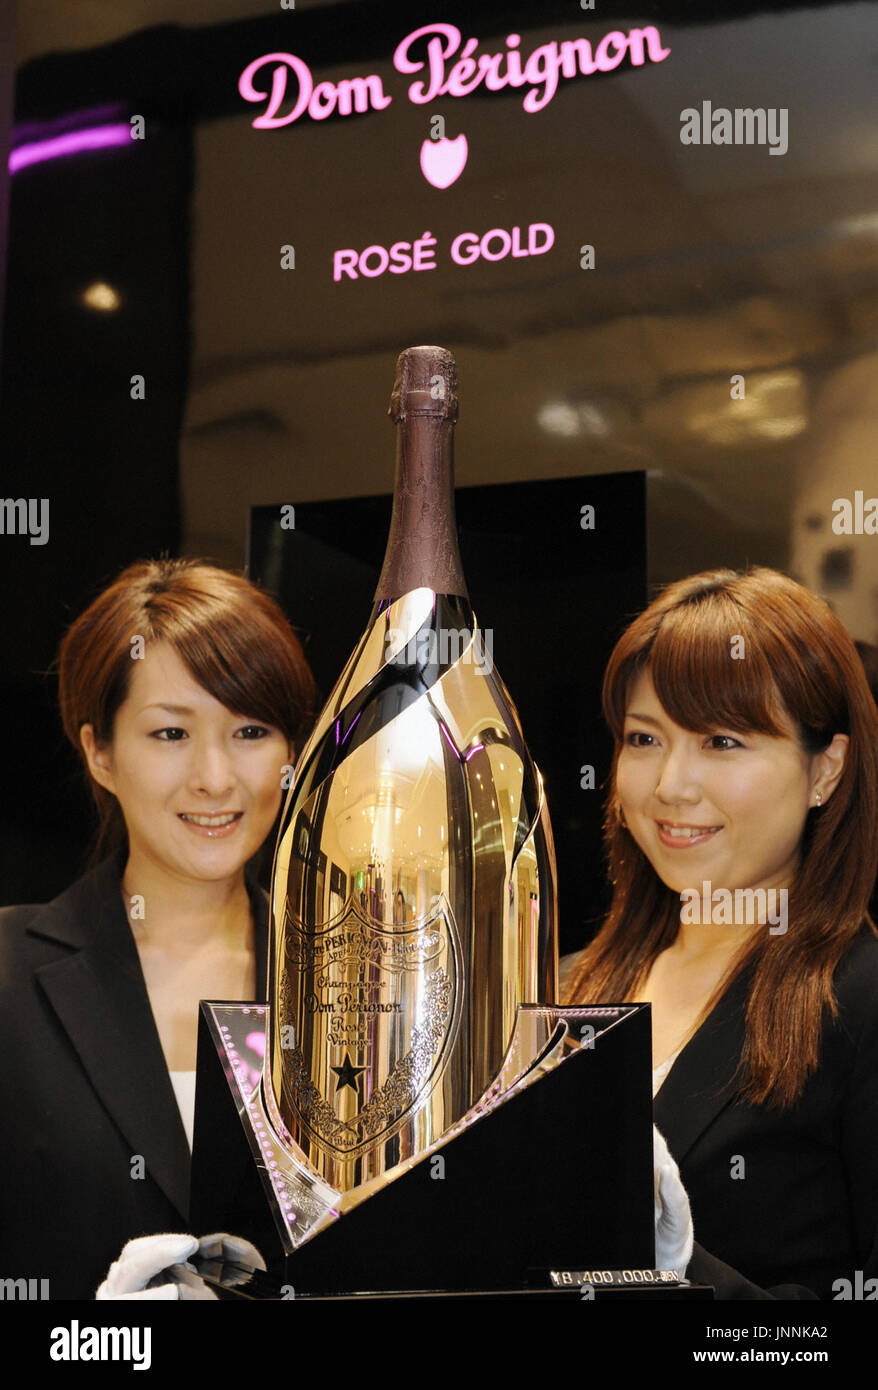 Dom Perignon Champagne bottle Stock Photo - Alamy